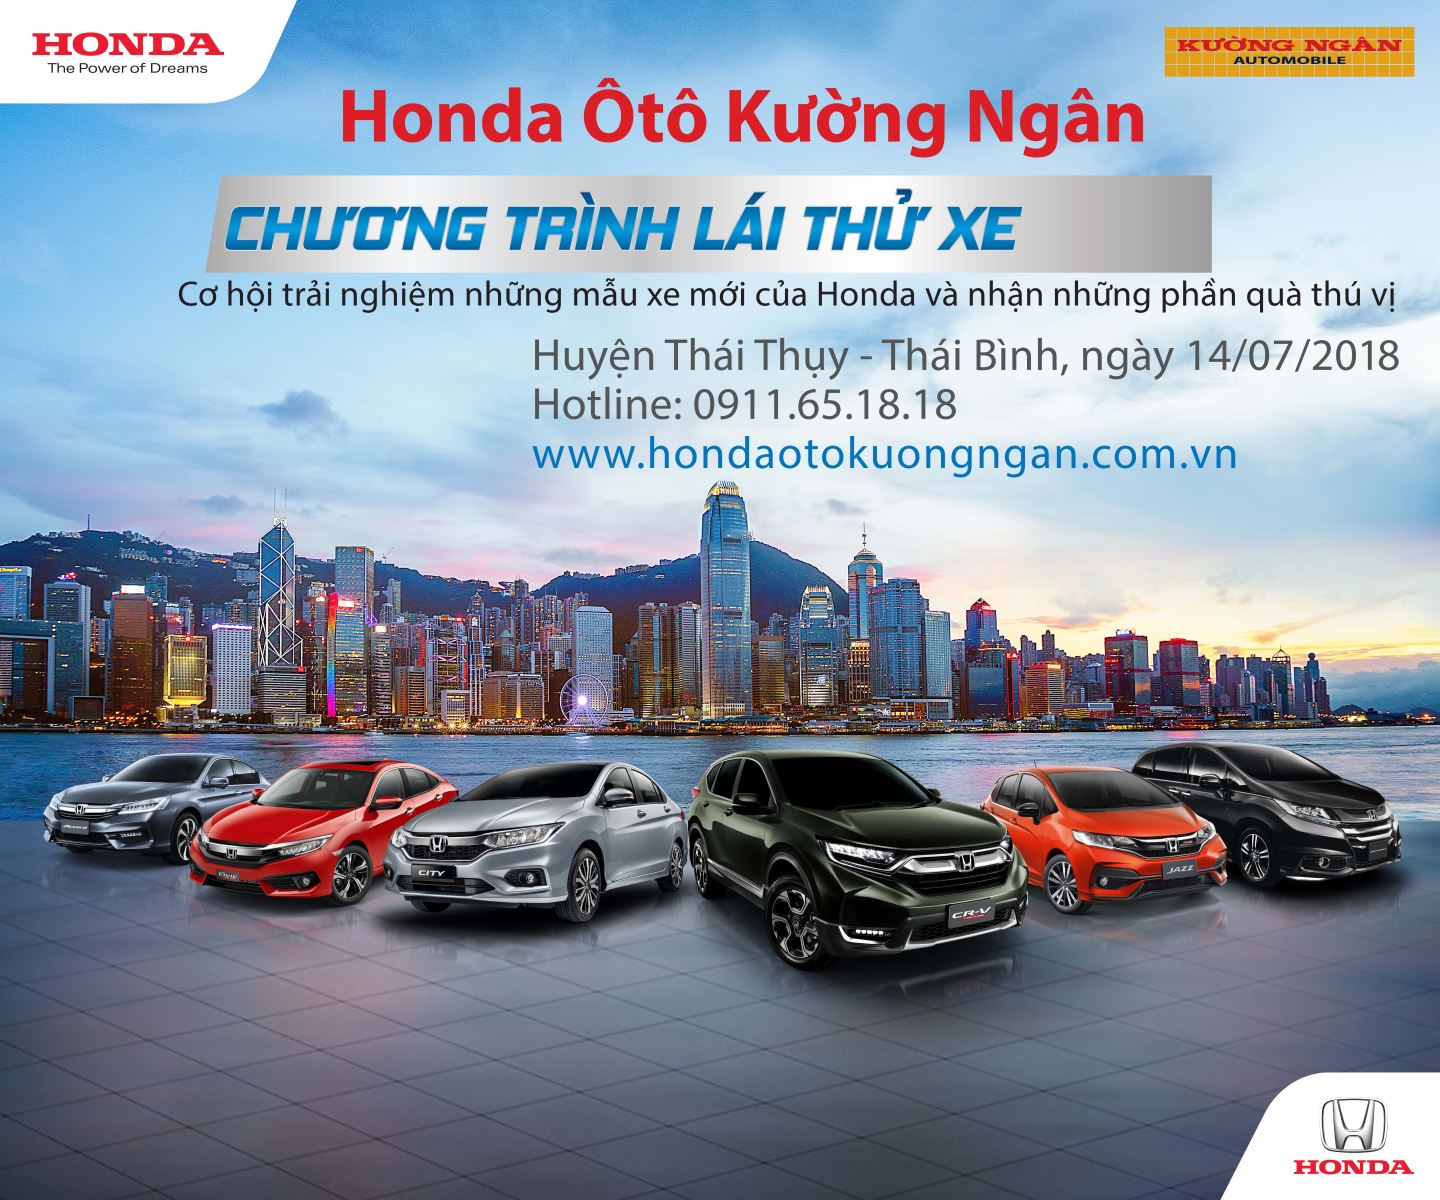 Lịch lái thử xe thang 07-2018 Honda Ôtô Kường Ngân